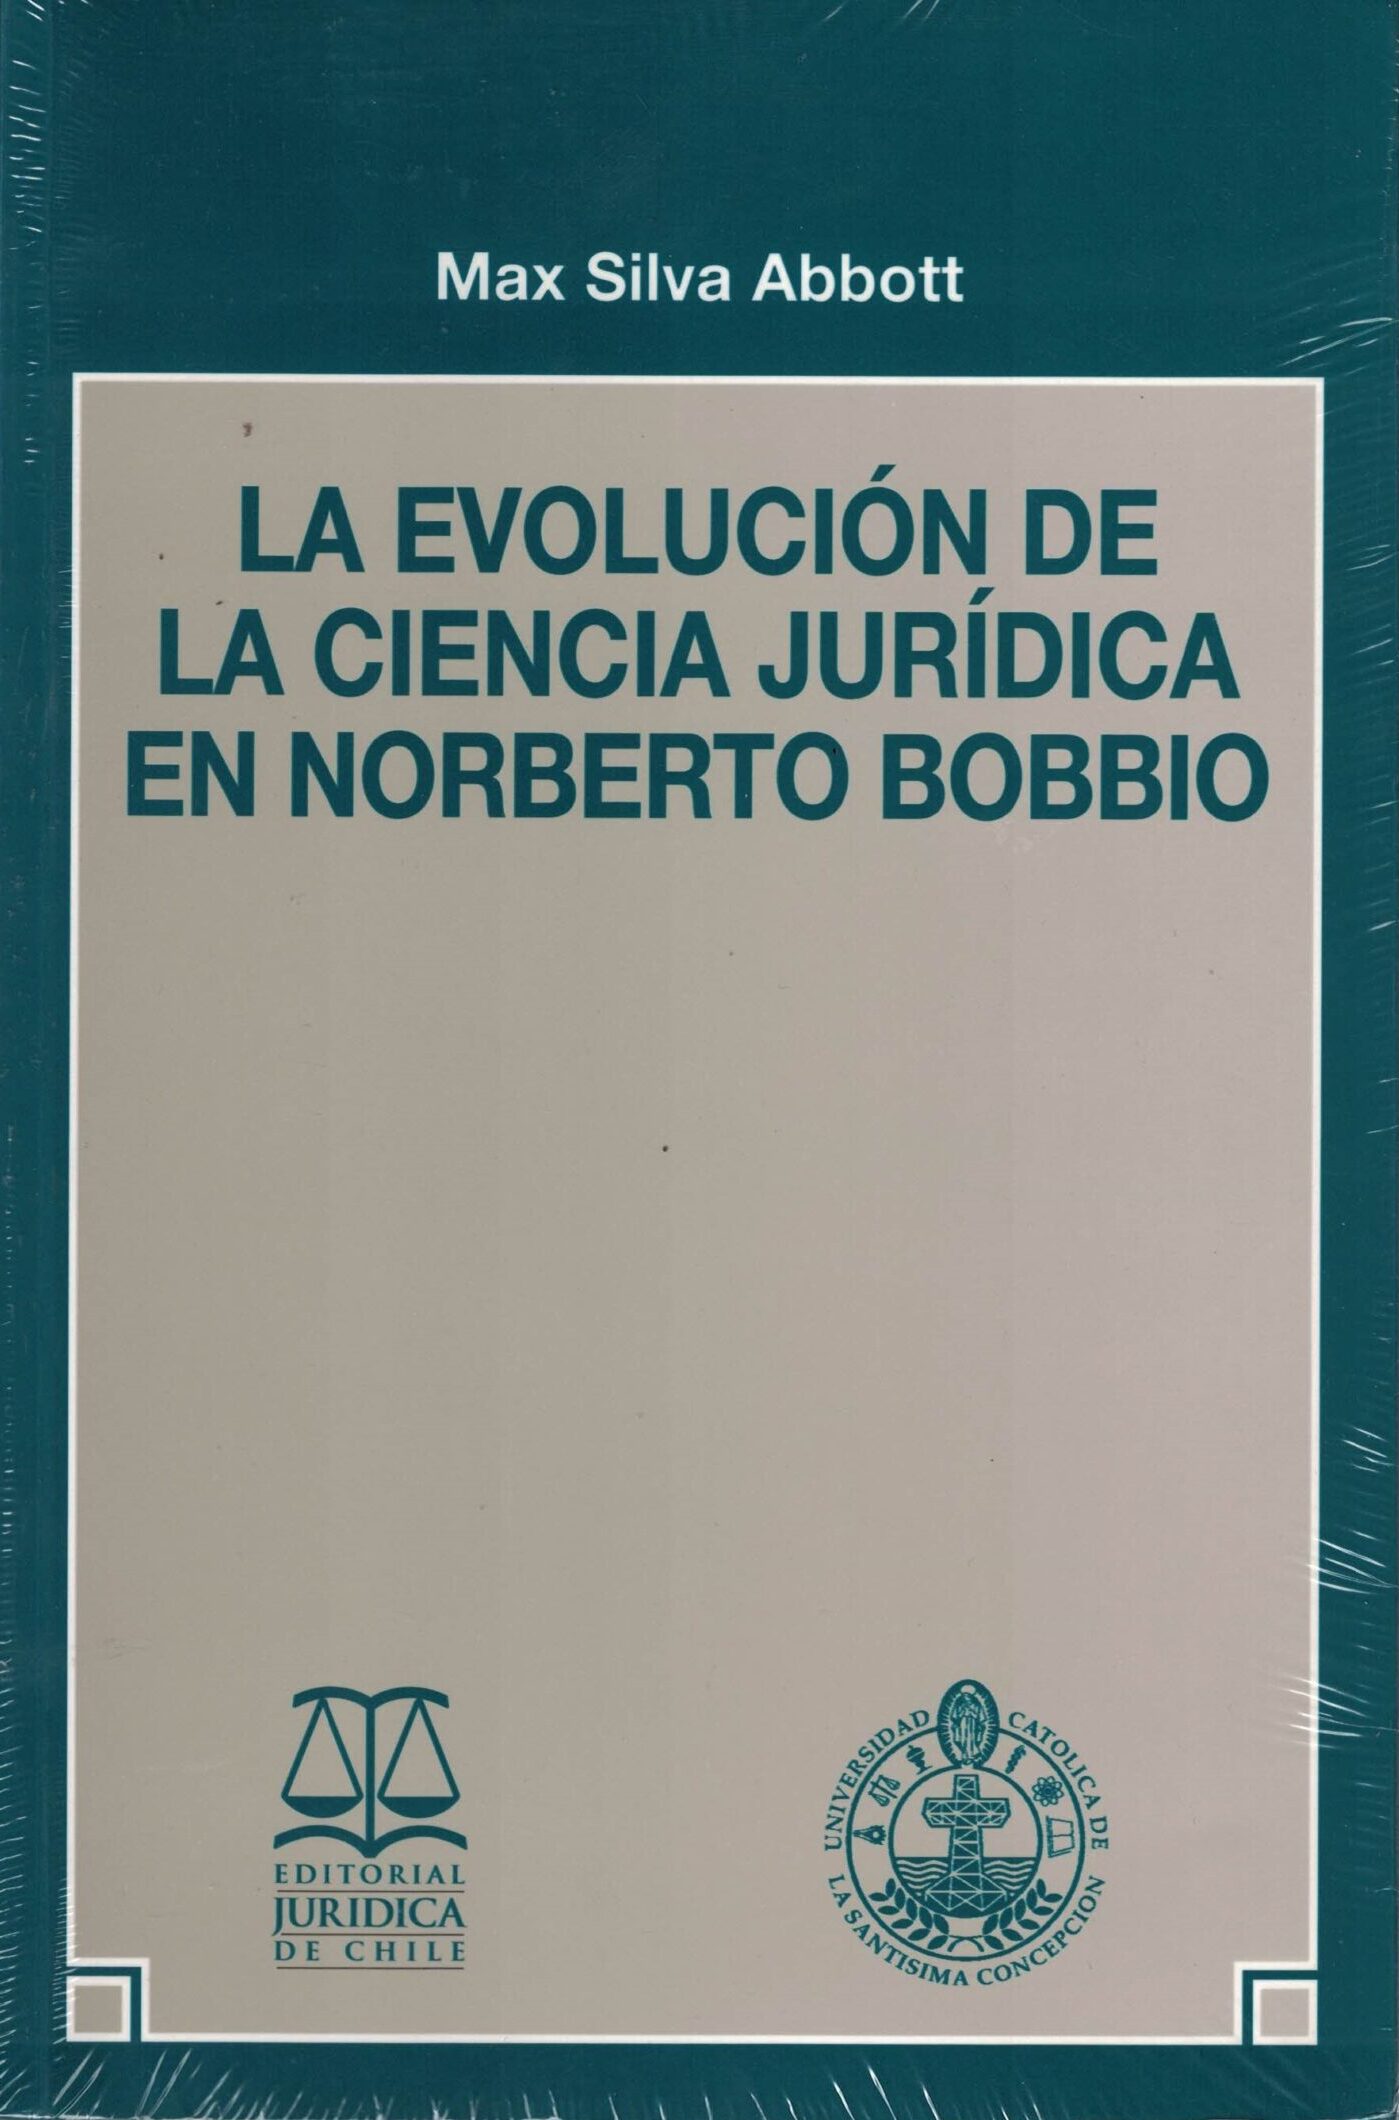 La Evolución de la Ciencia Jurídica en Norberto Bobbio